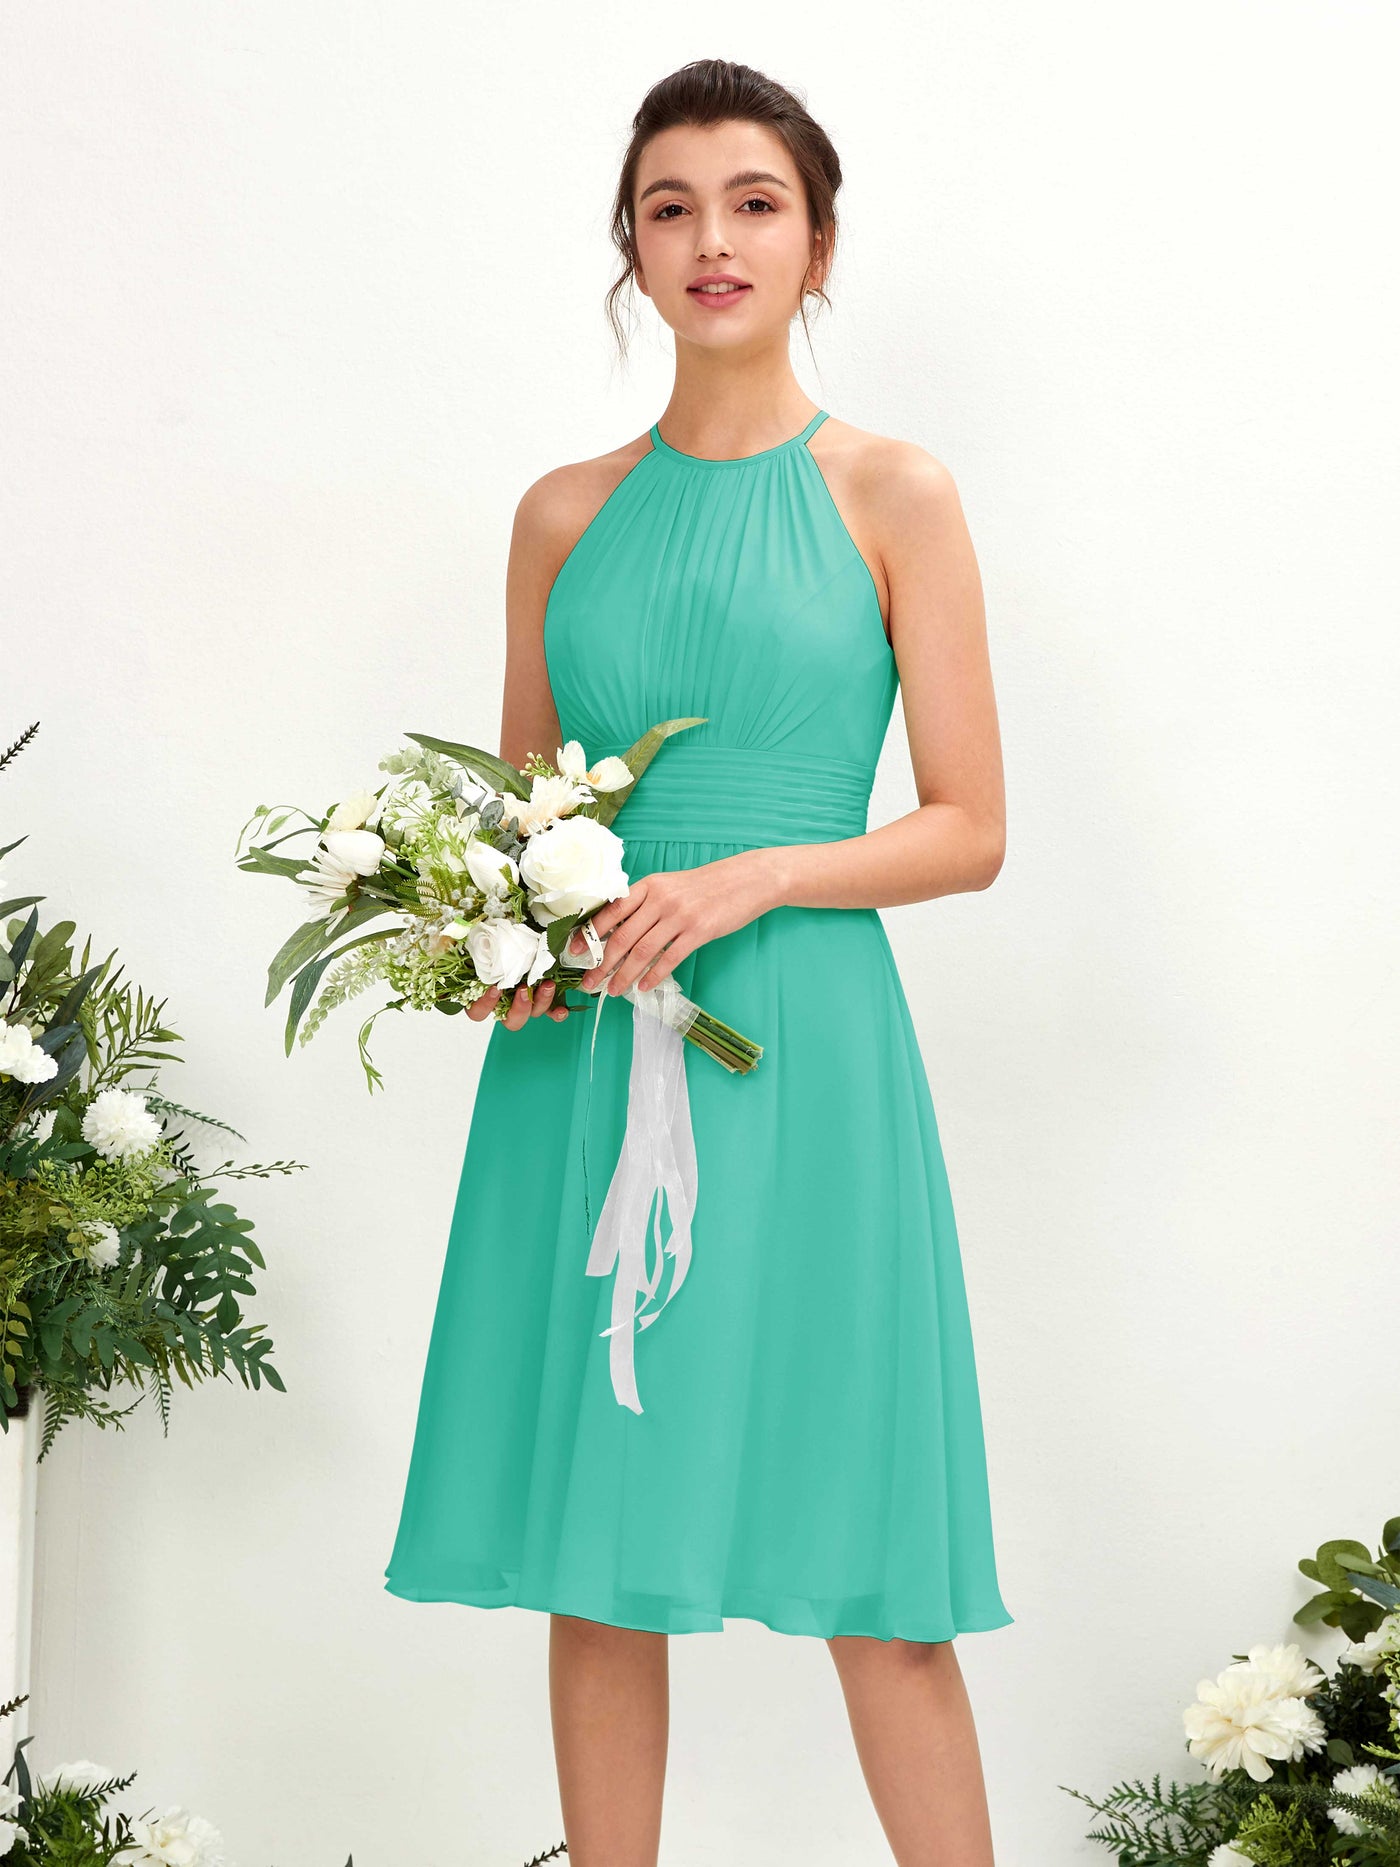 Halter Sleeveless Chiffon Bridesmaid Dress - Tiffany (81220132)#color_tiffany